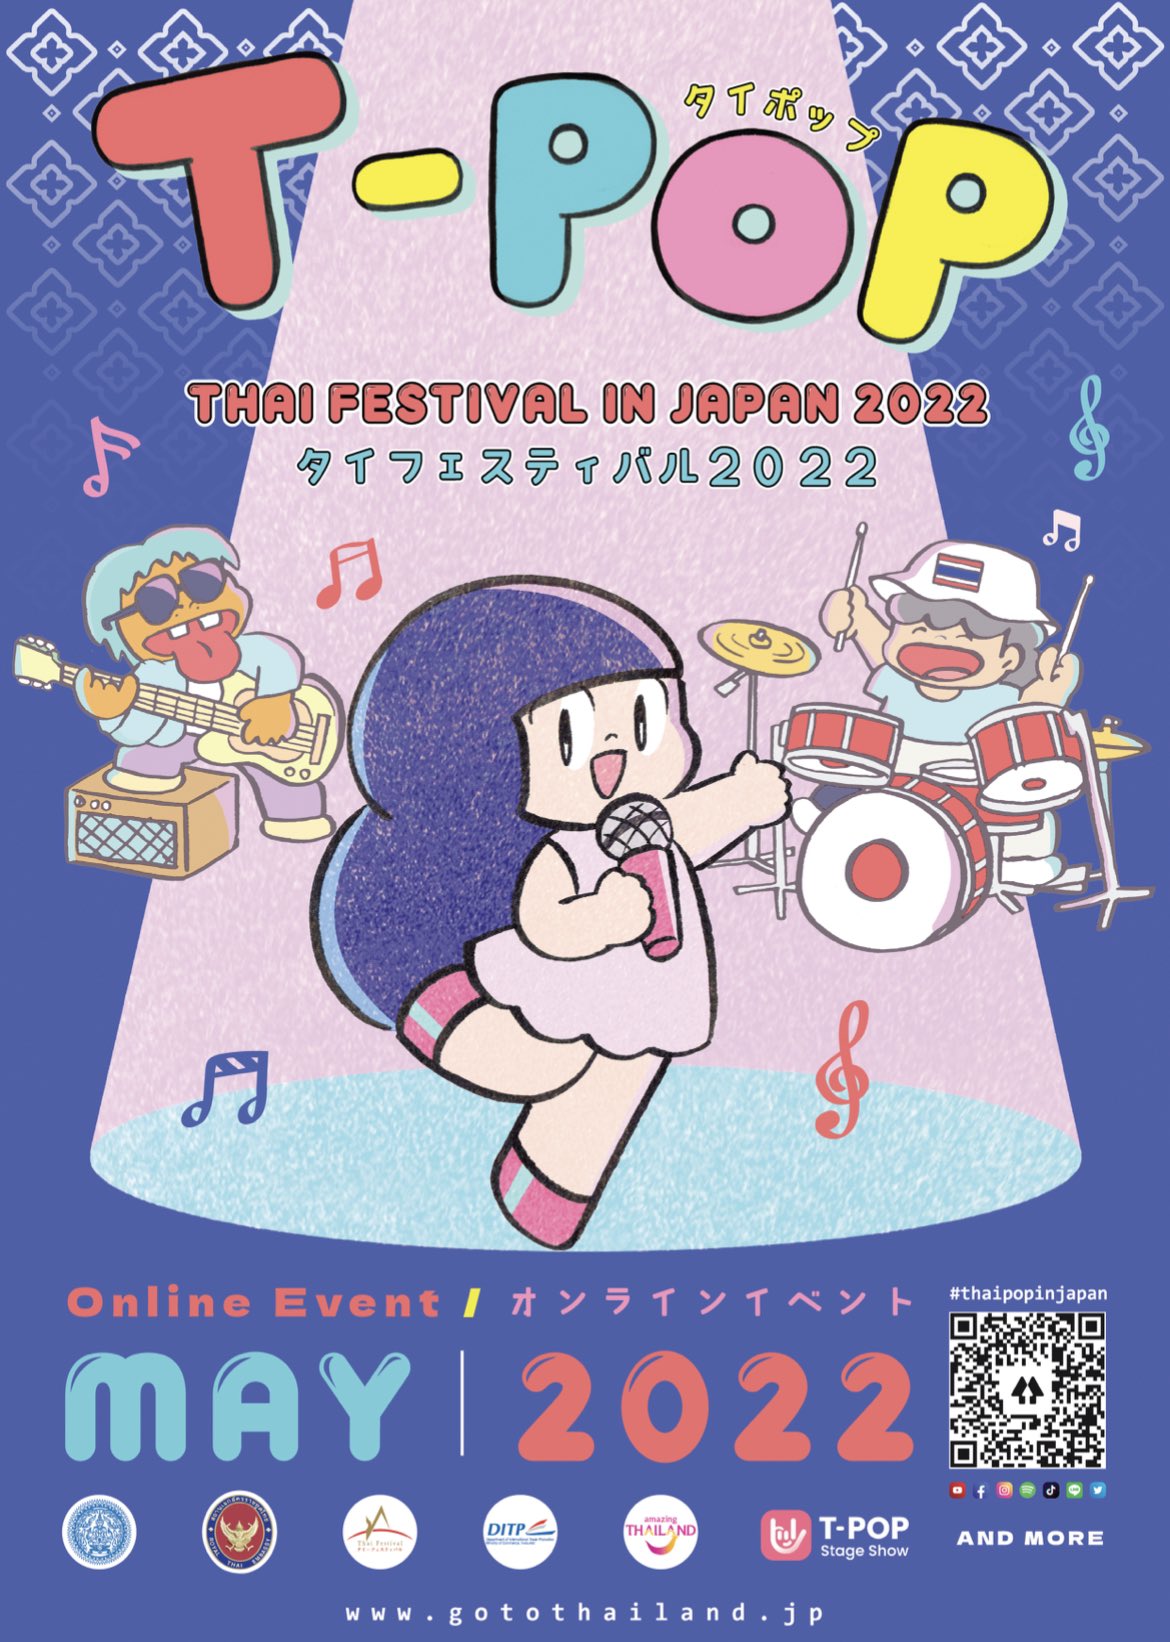 【タイフェス】タイフェスティバル2022 T-Pop Stage Show: Special Episode with Thai Festival in Japan 2022【オンライン】